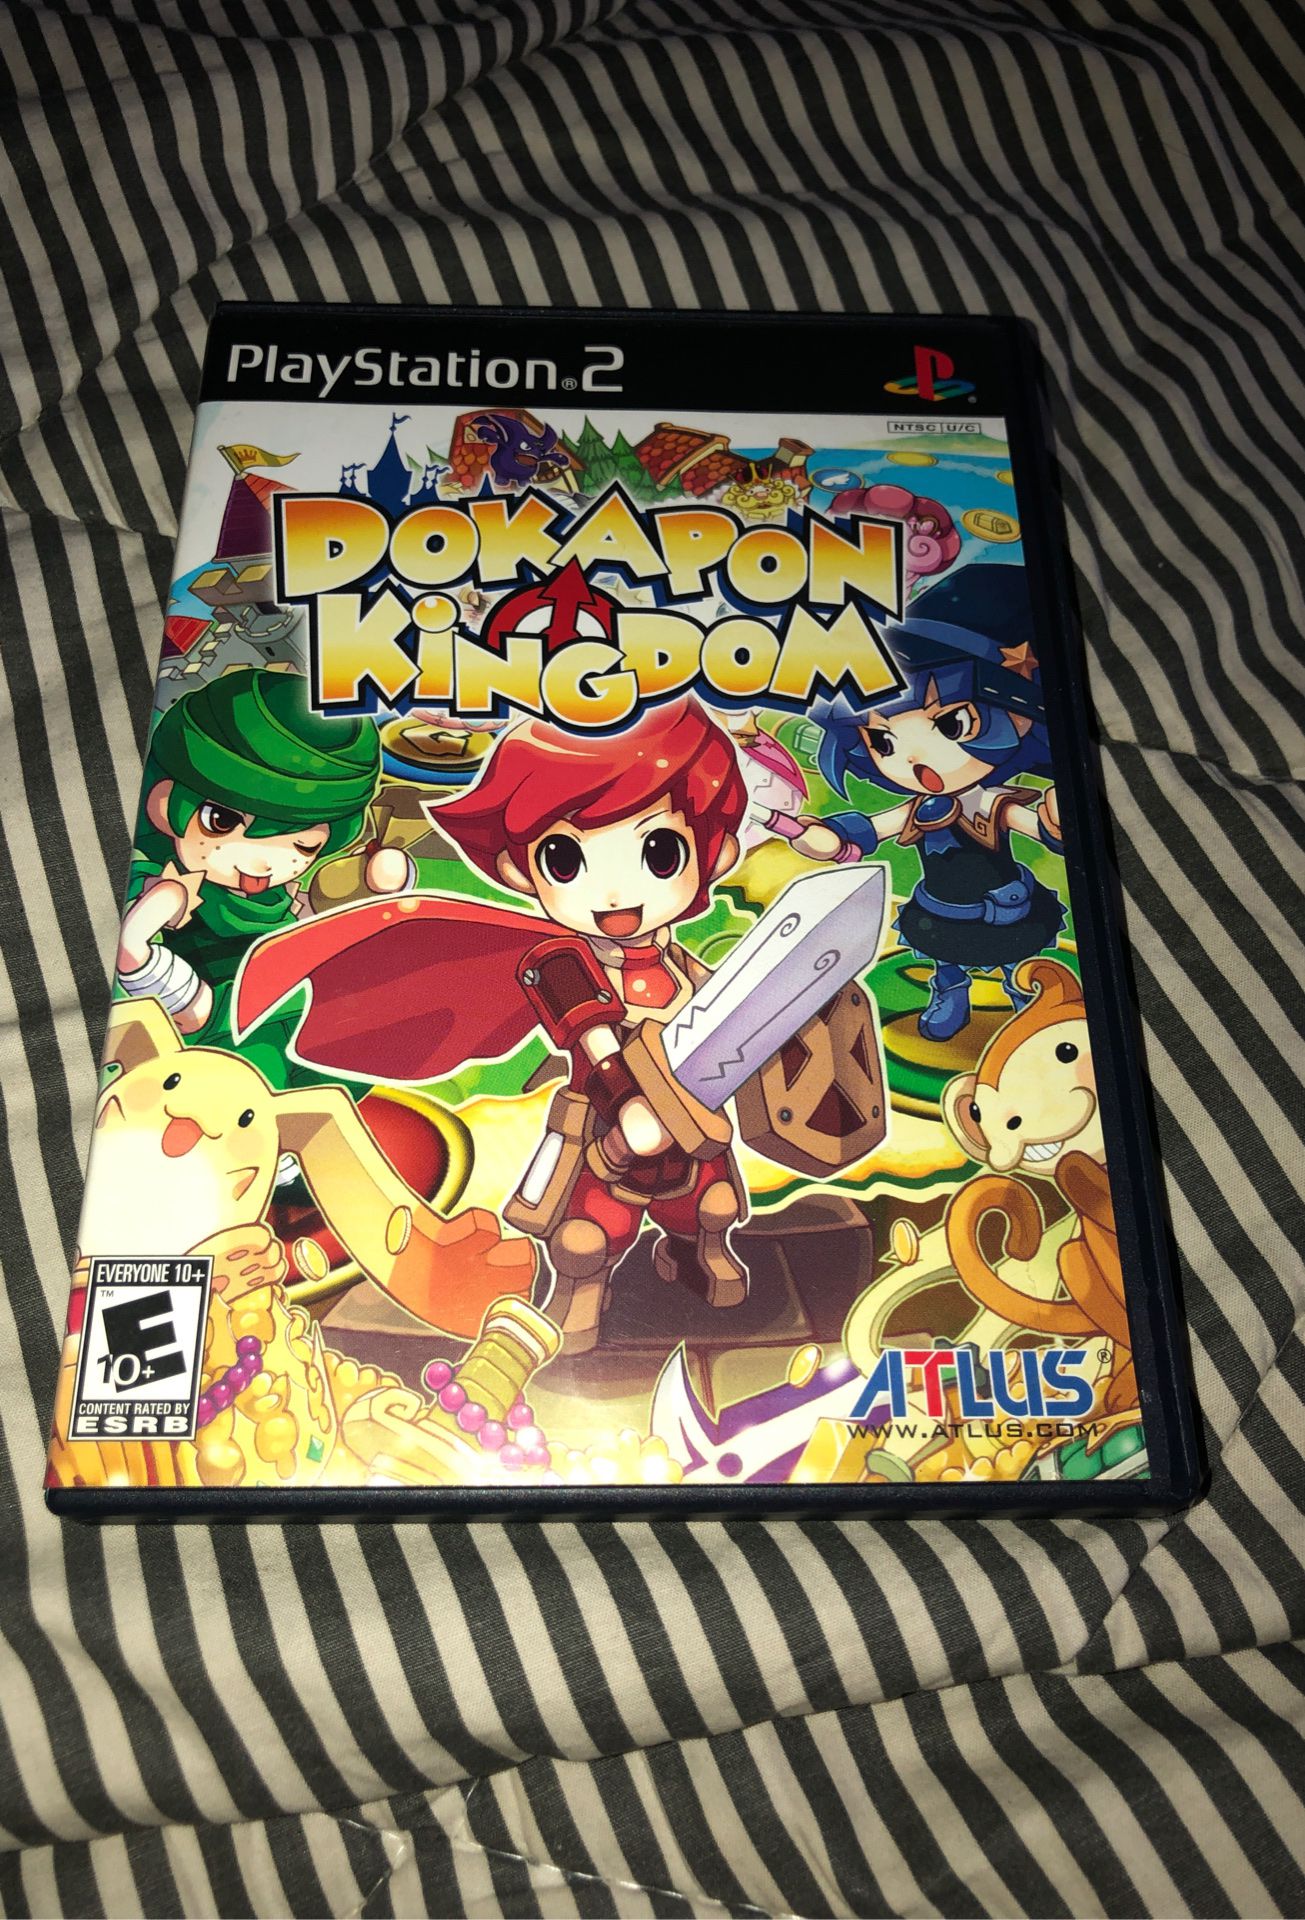 Dokapon Kingdom (PS2)